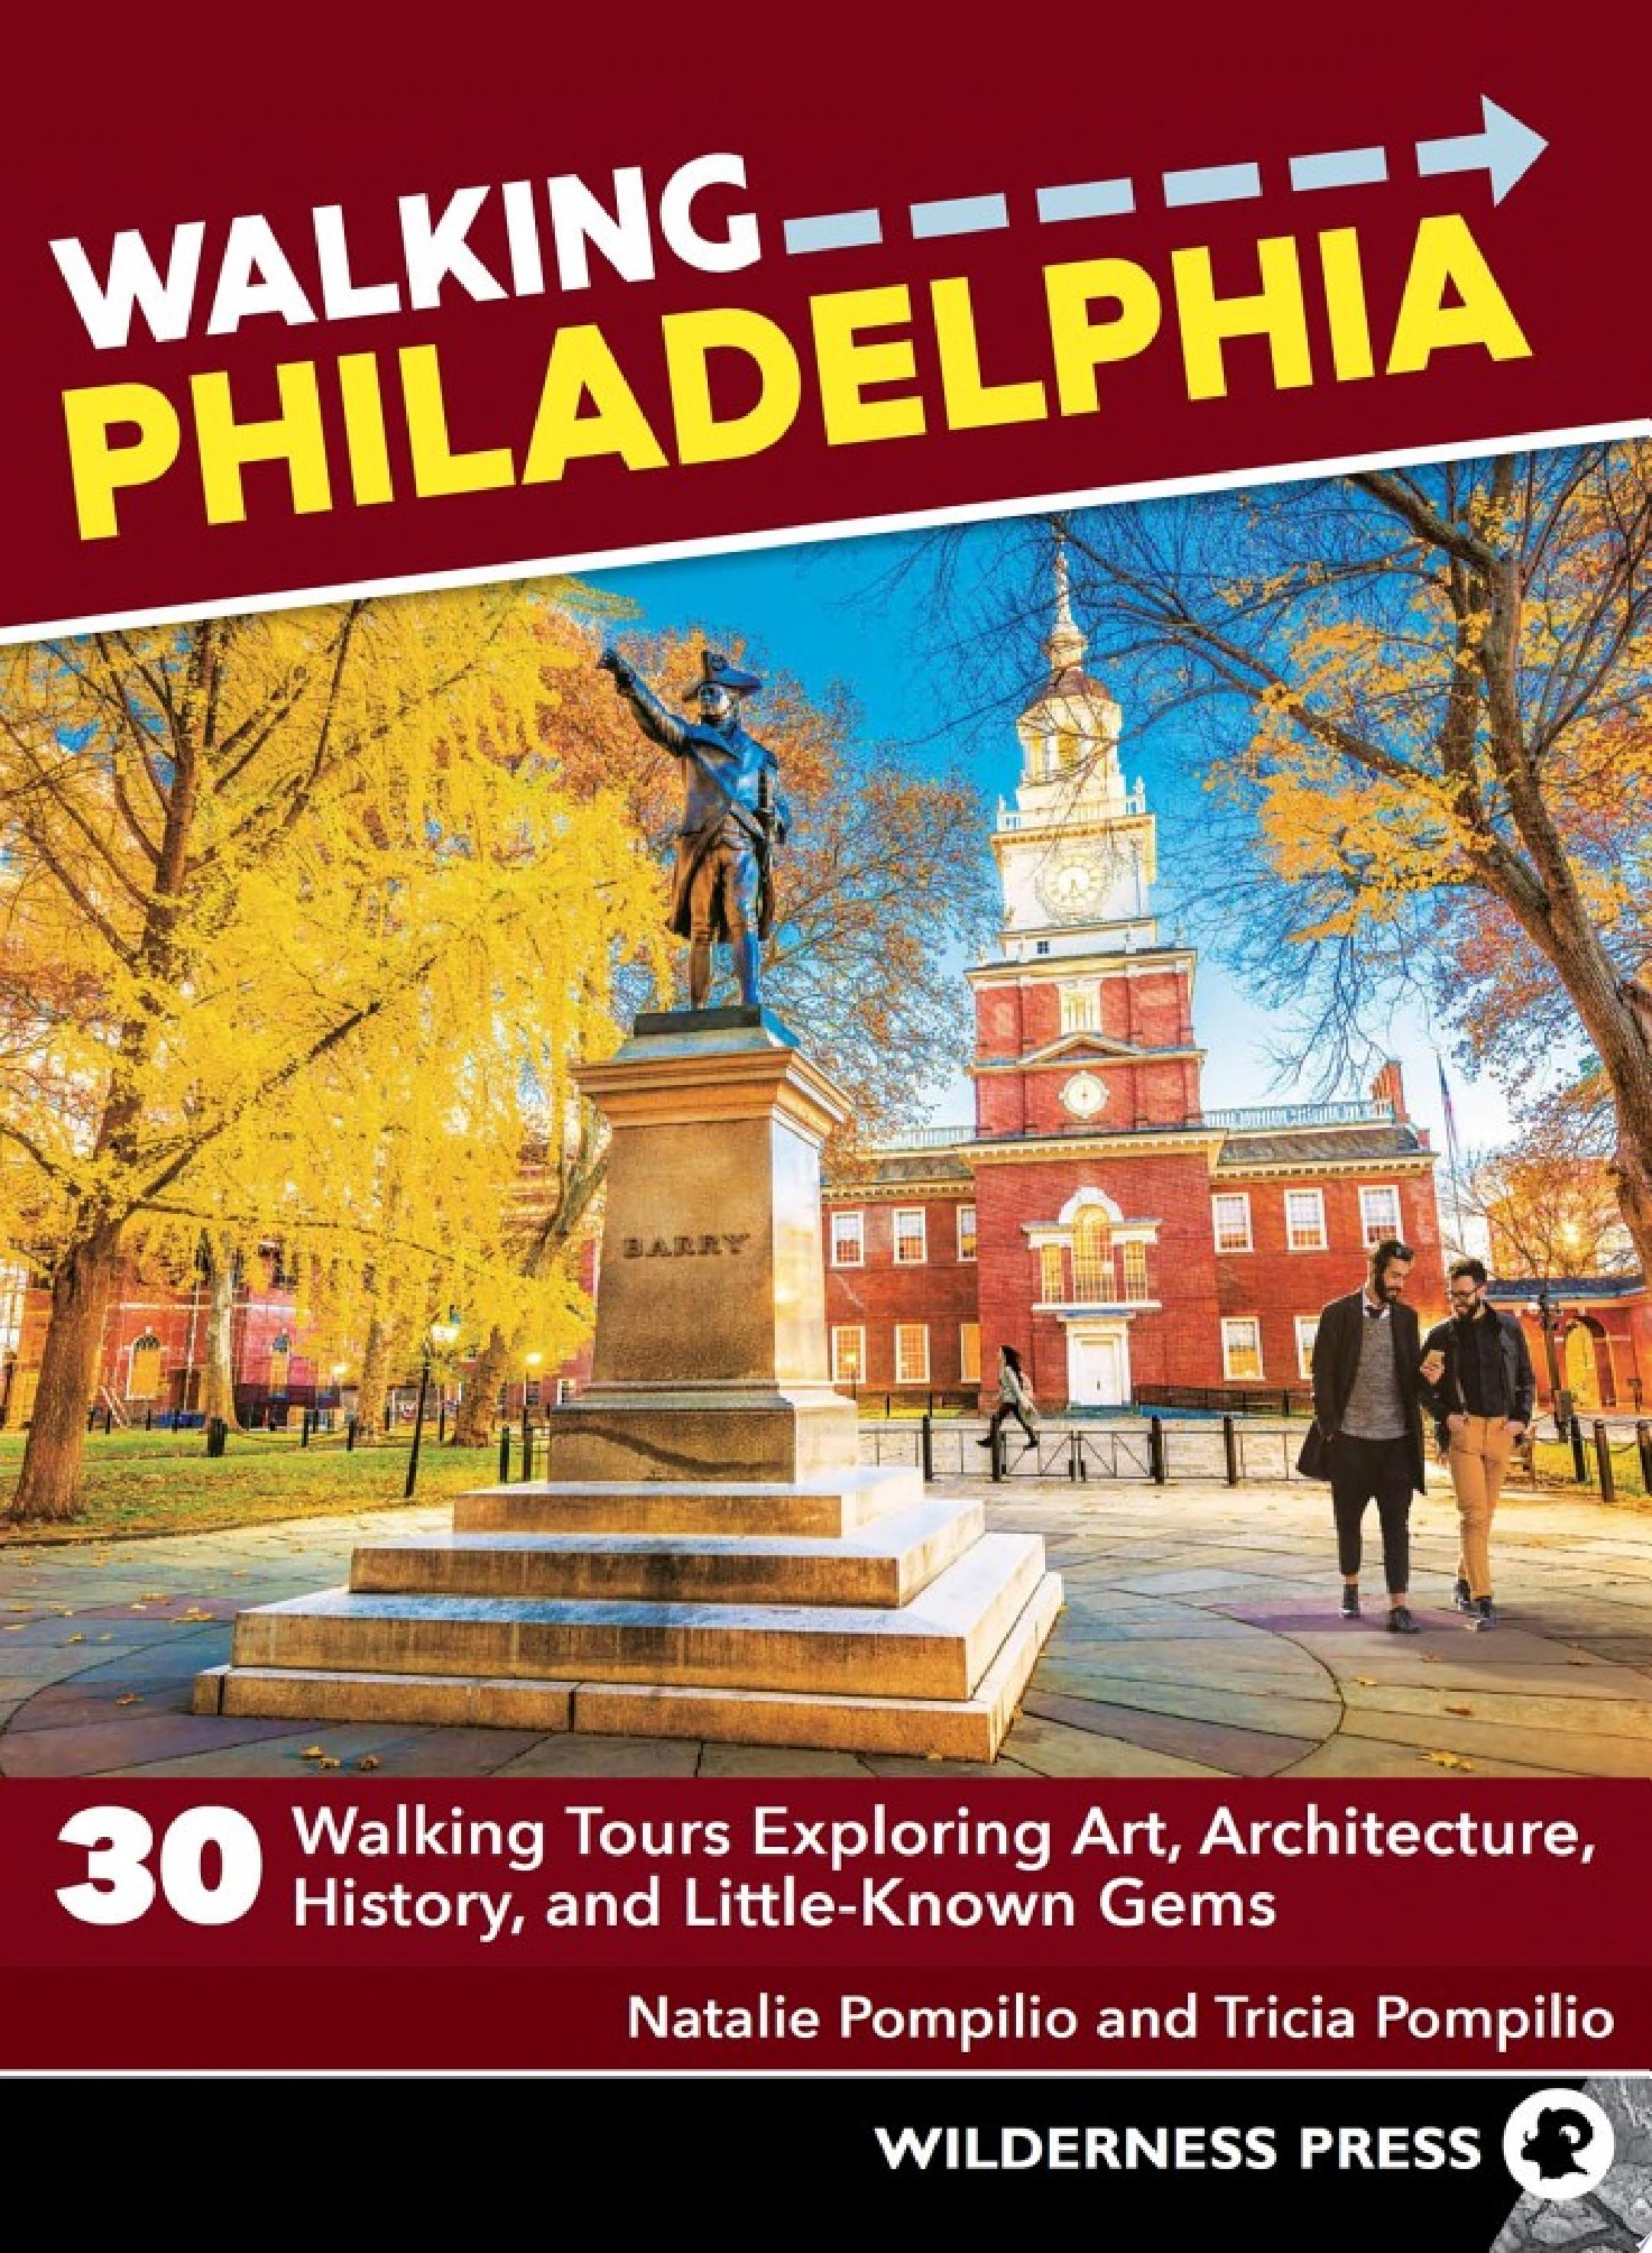 Image for "Walking Philadelphia"